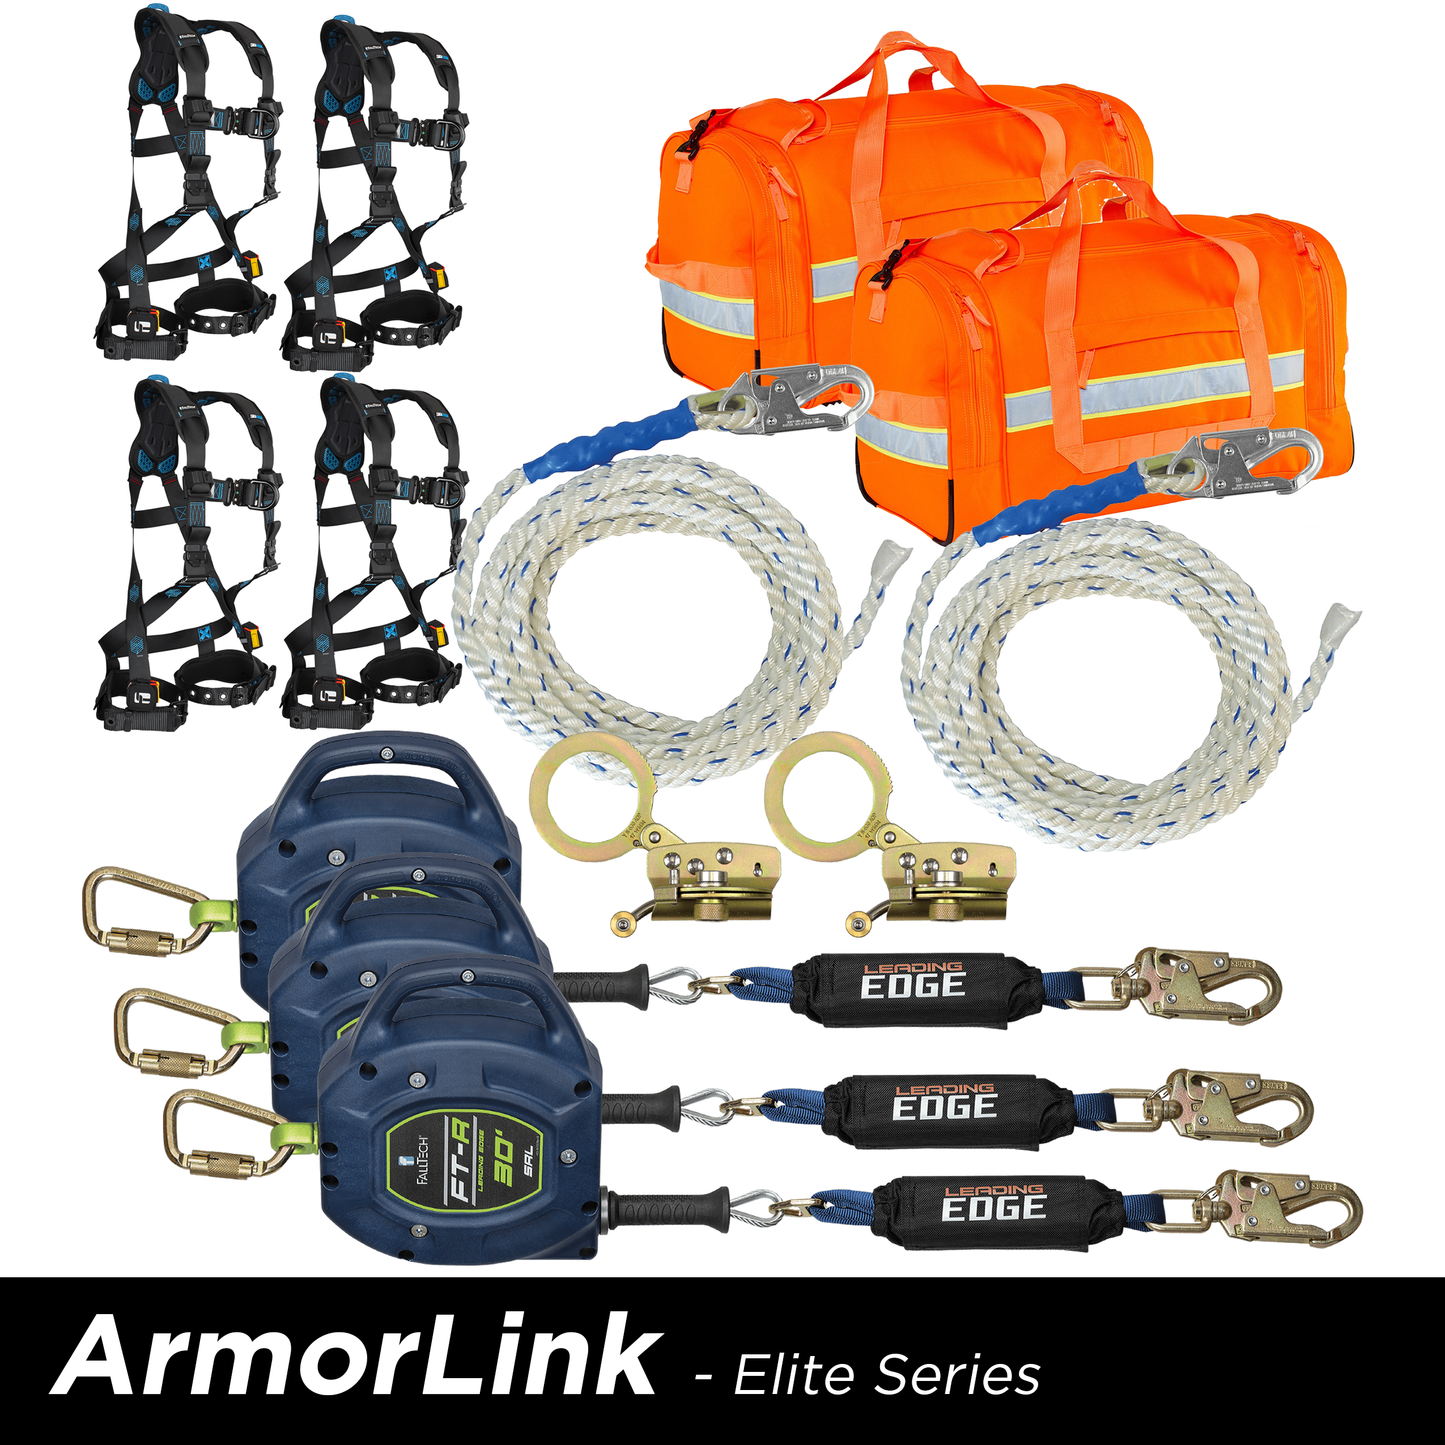 ArmorLink Elite Series Kits - R2000™